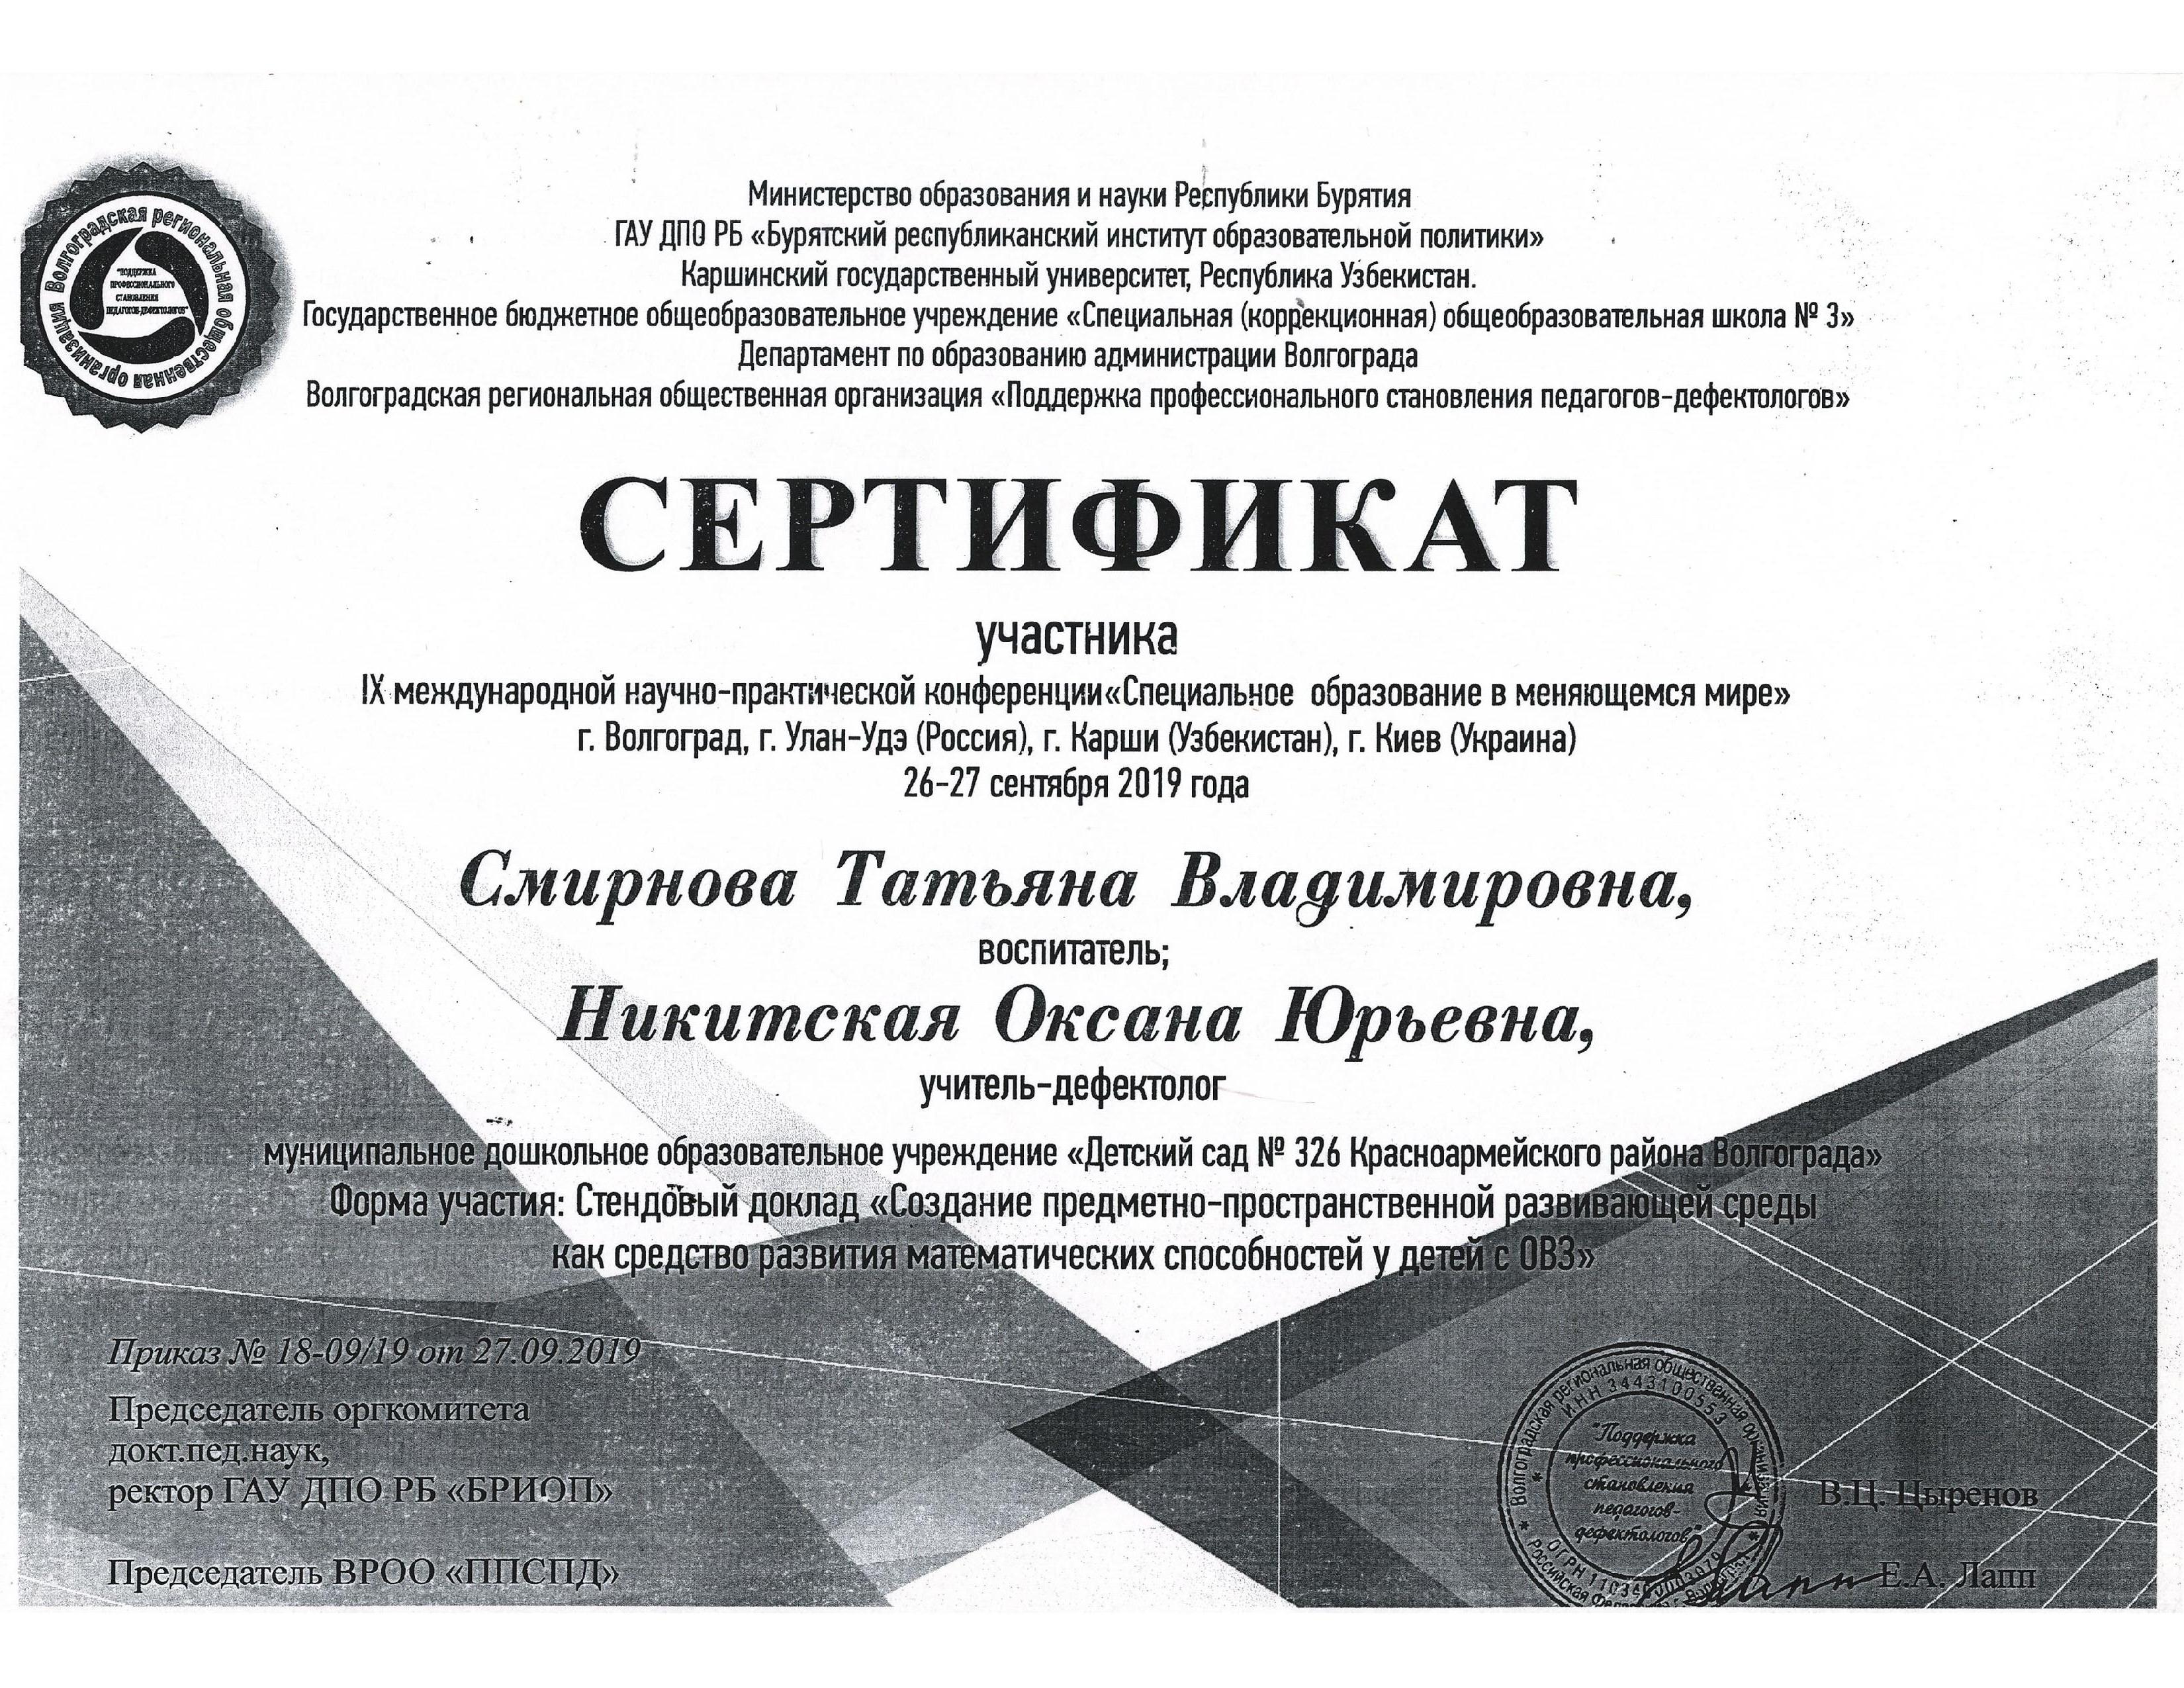 Сертификат конференции Специальное образование (pdf.io).jpg